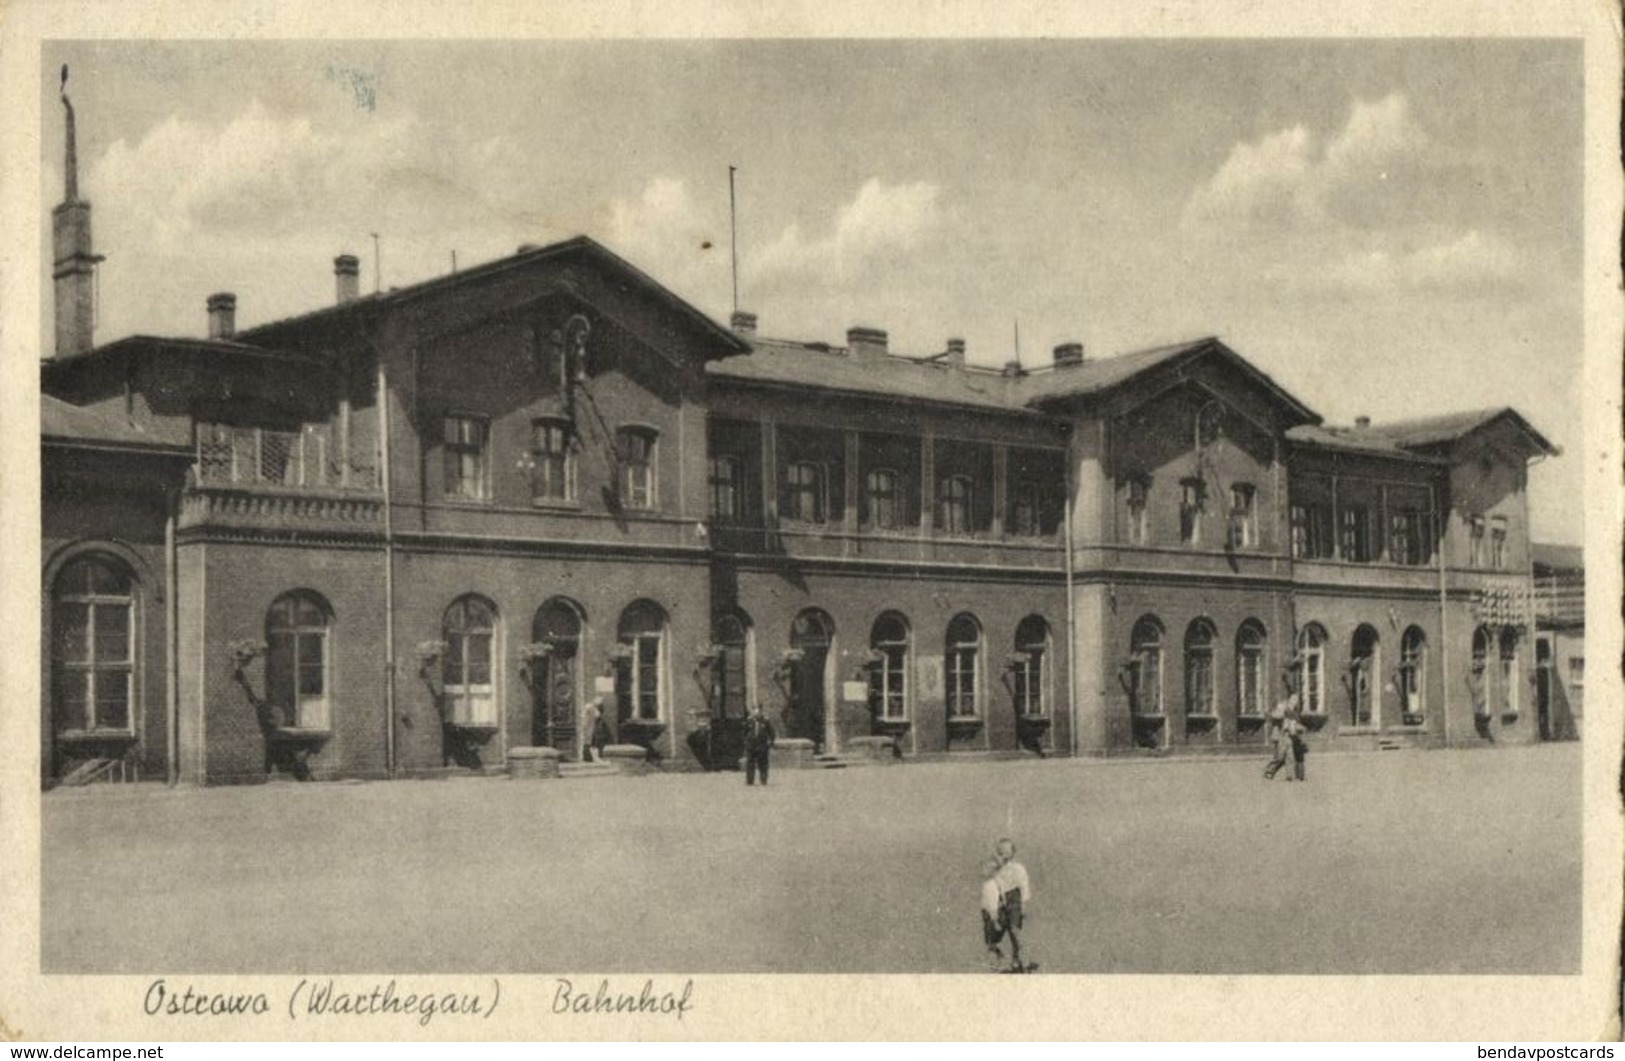 OSTROWO, Warthegau, Bahnhof, Railway Station (1940s) Polen AK - Posen